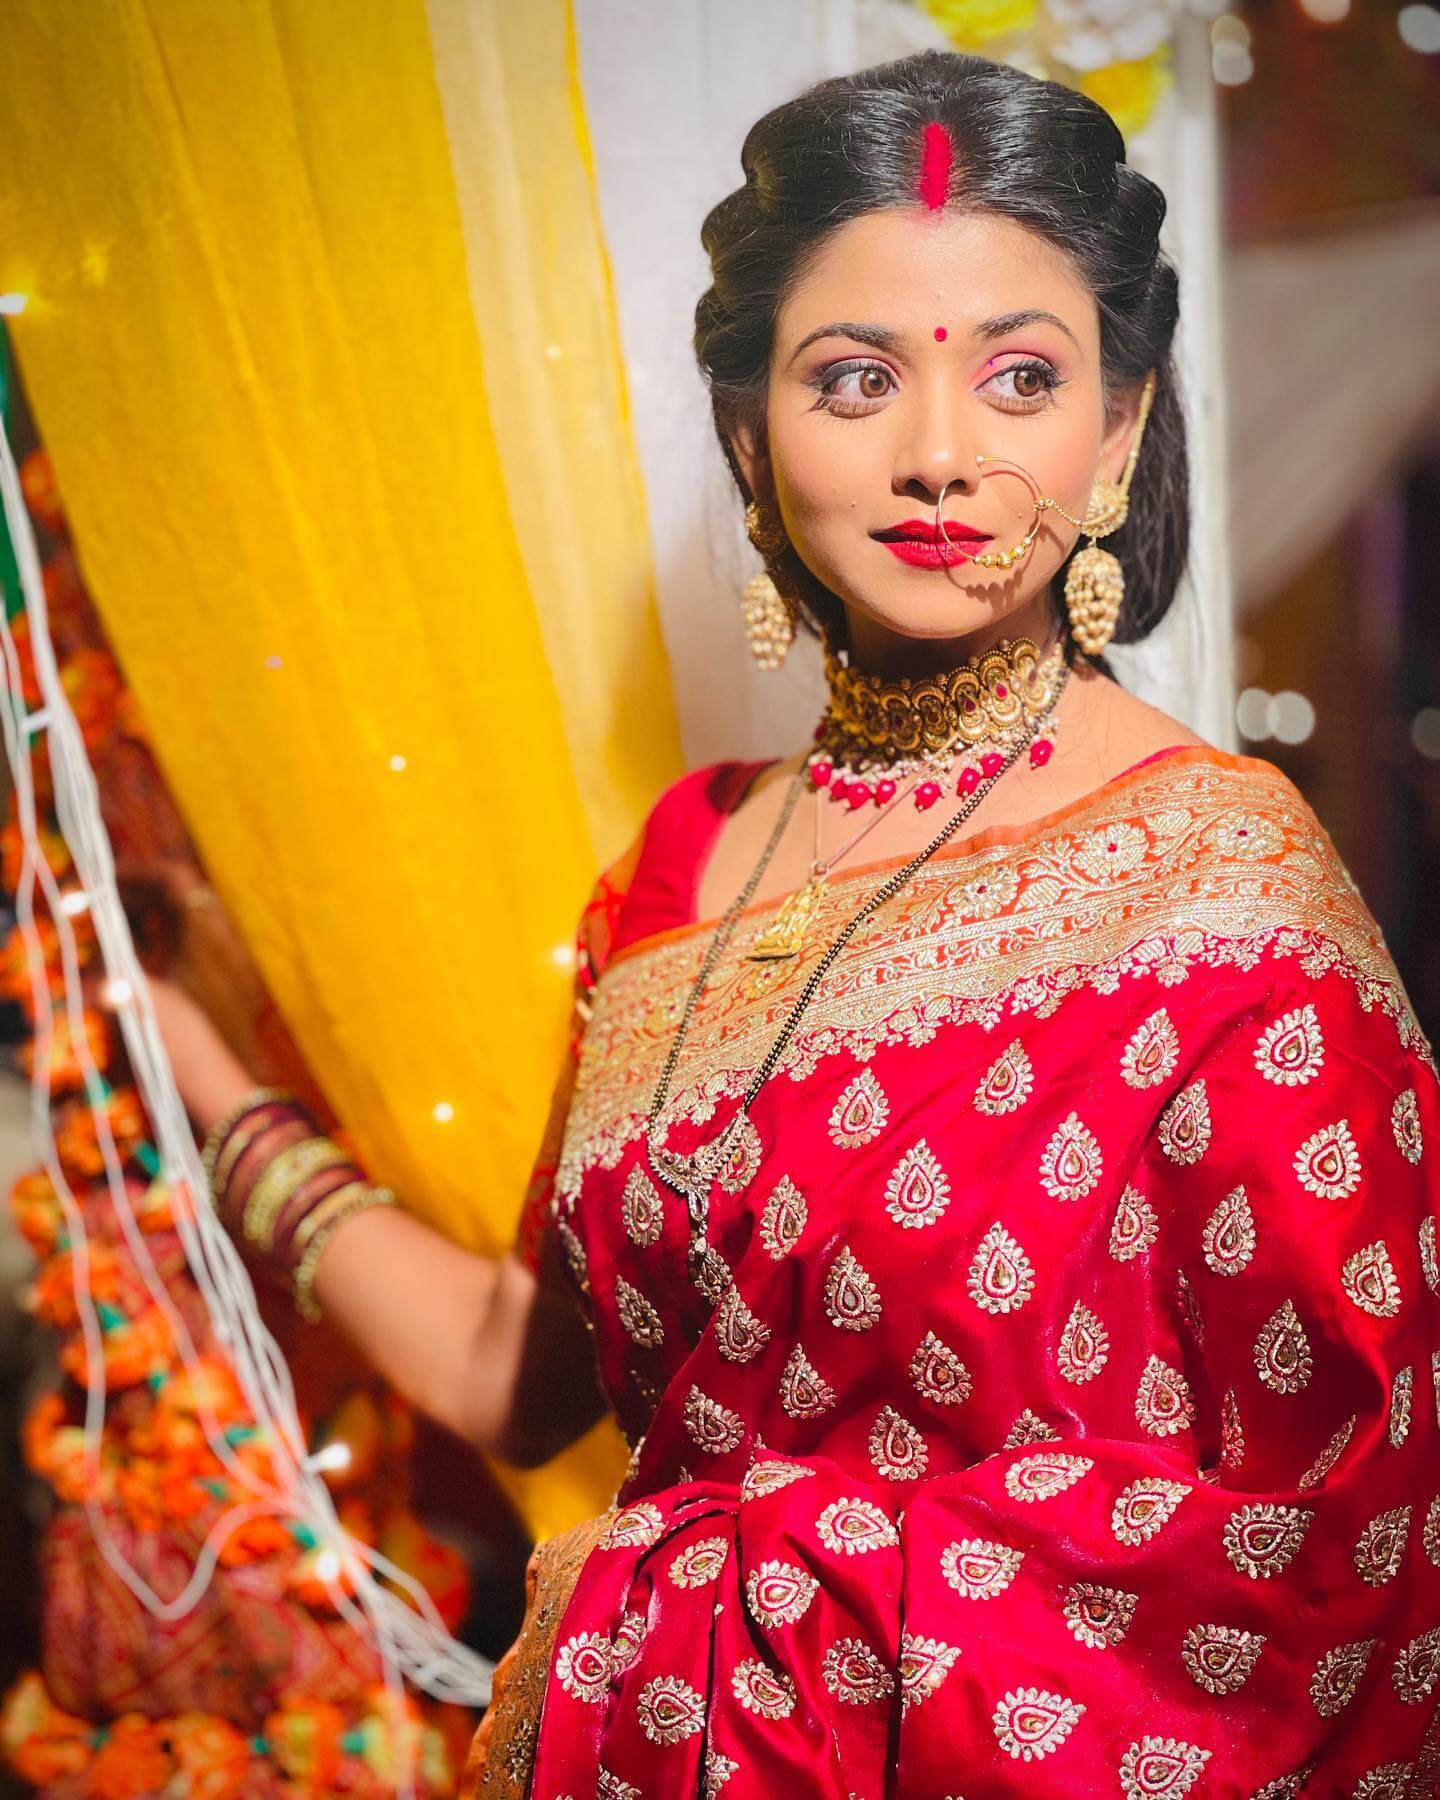 TV Actress Tanvi Dogra  Sanskari Bahu Look In Traditional Indian Saree